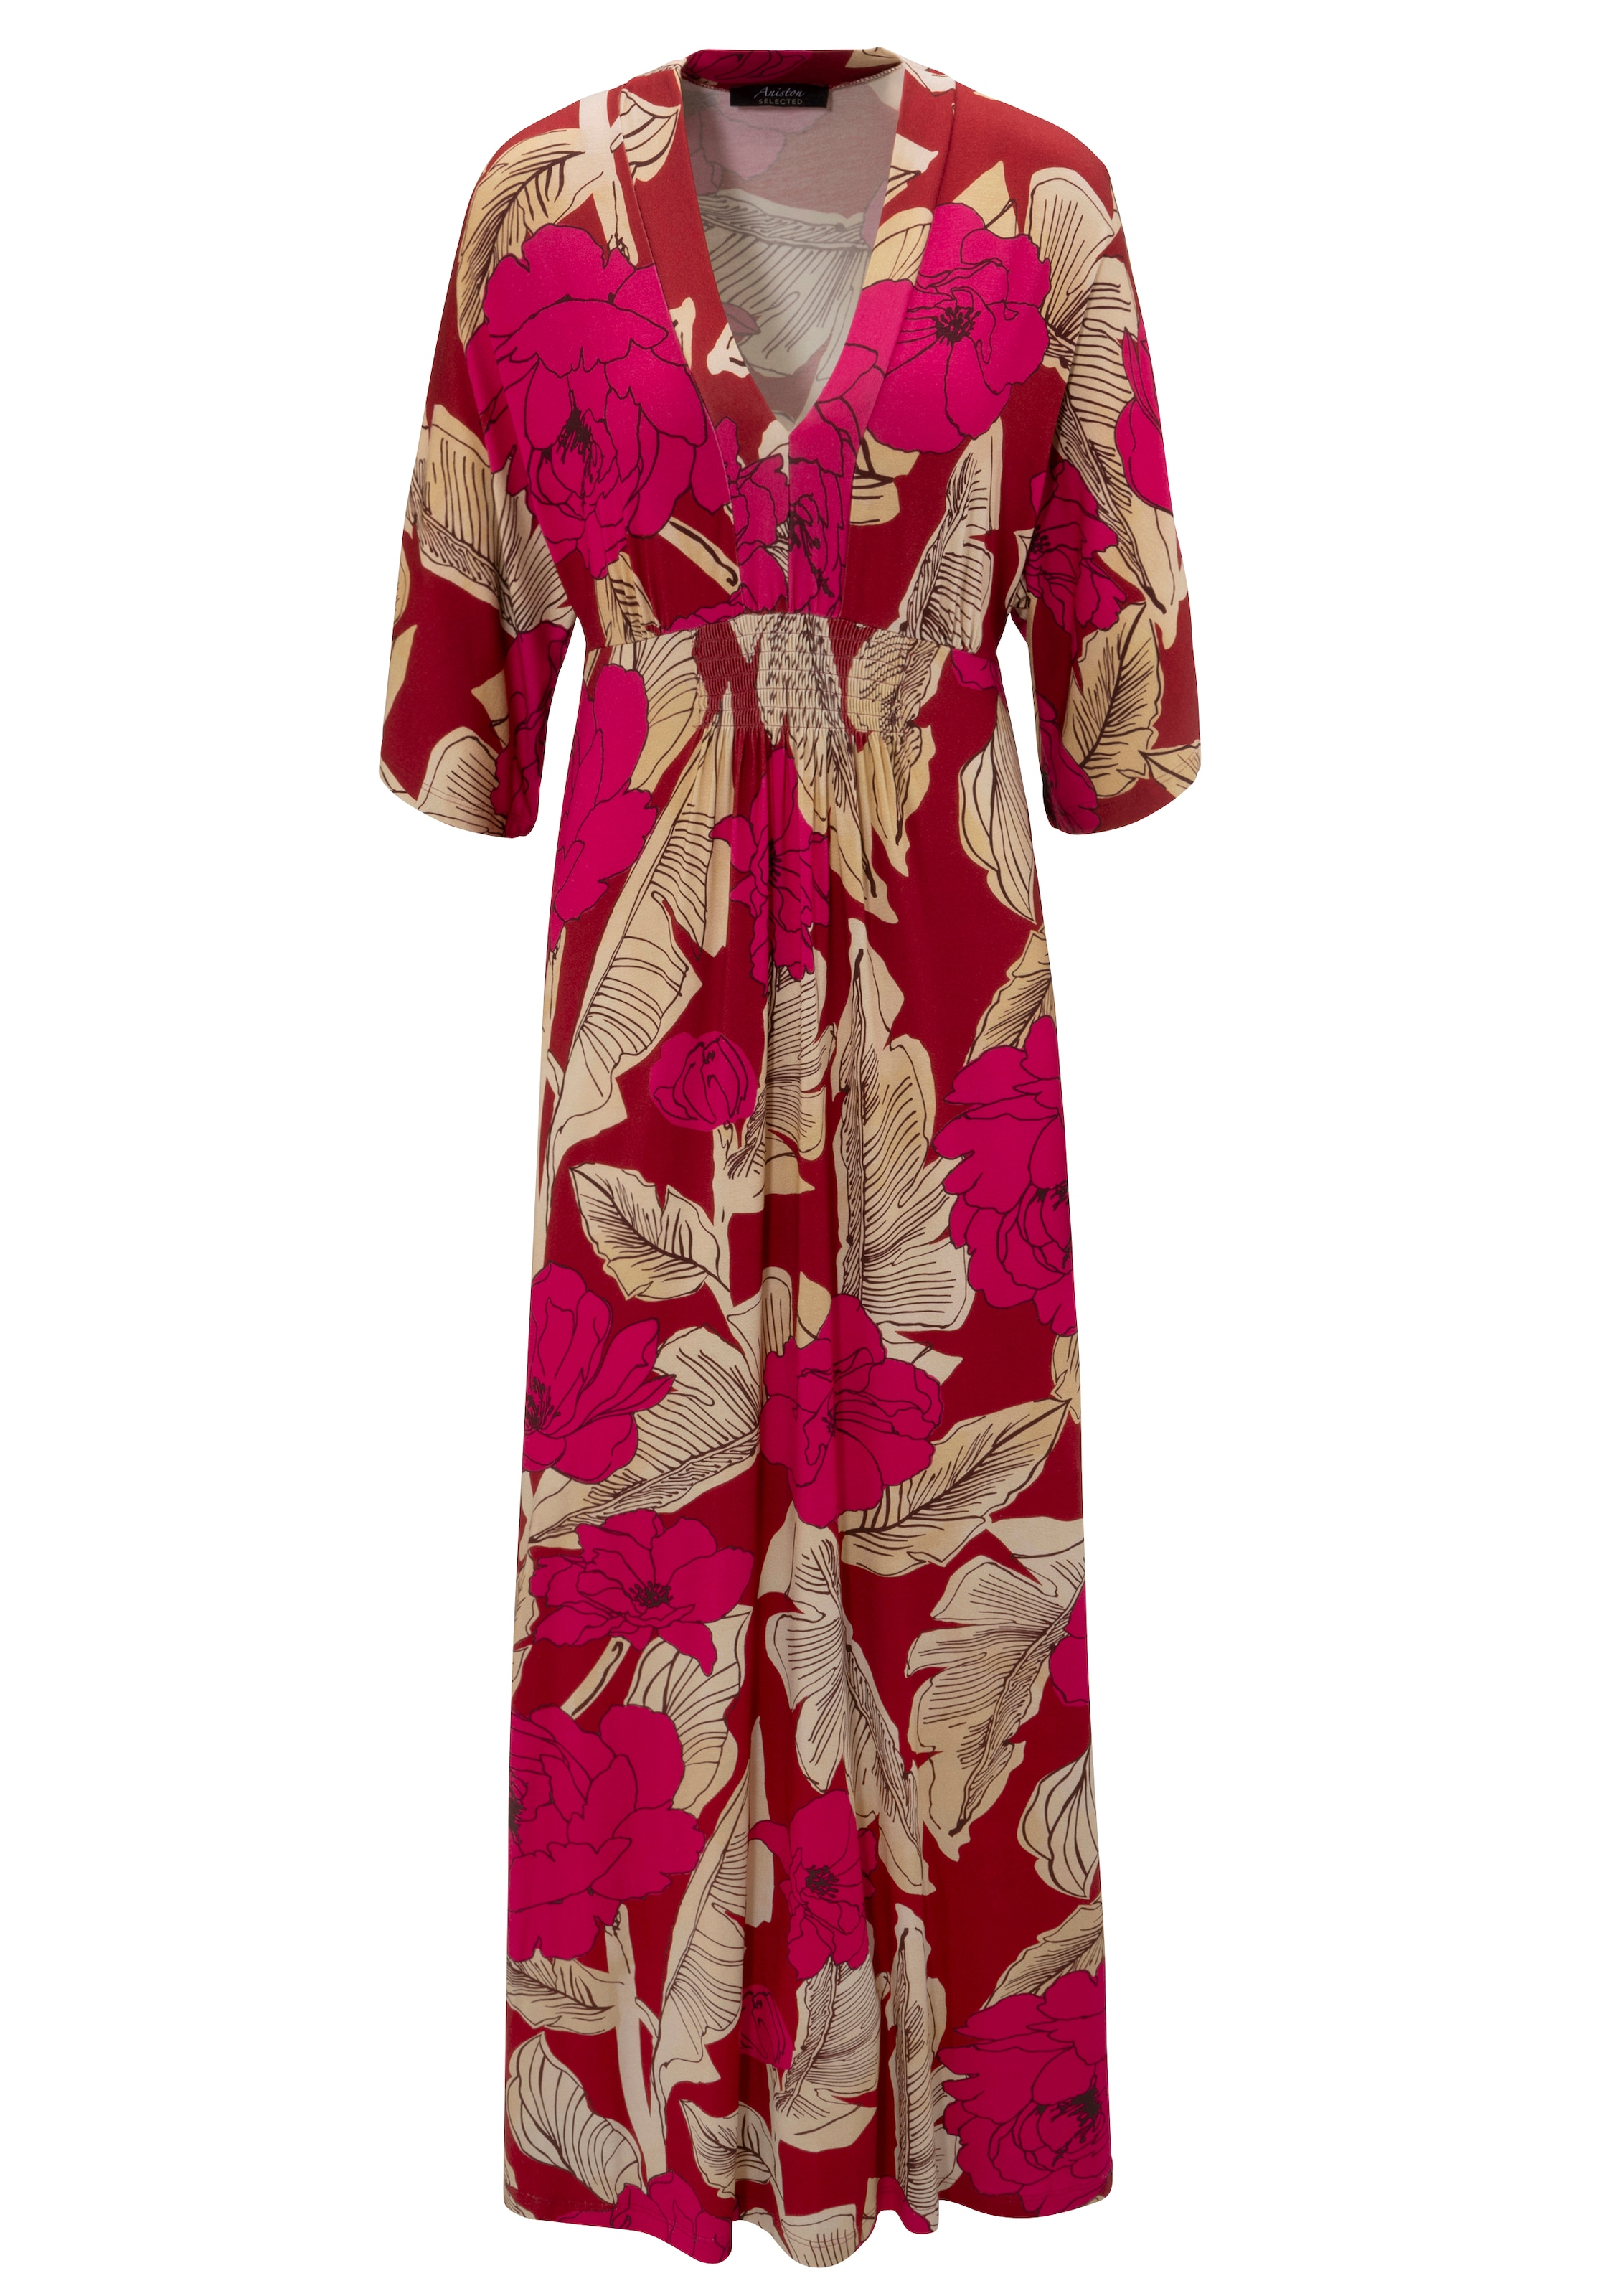 Blätterdruck Aniston bei Blüten- mit KOLLEKTION SELECTED - NEUE Sommerkleid, und großflächigem online